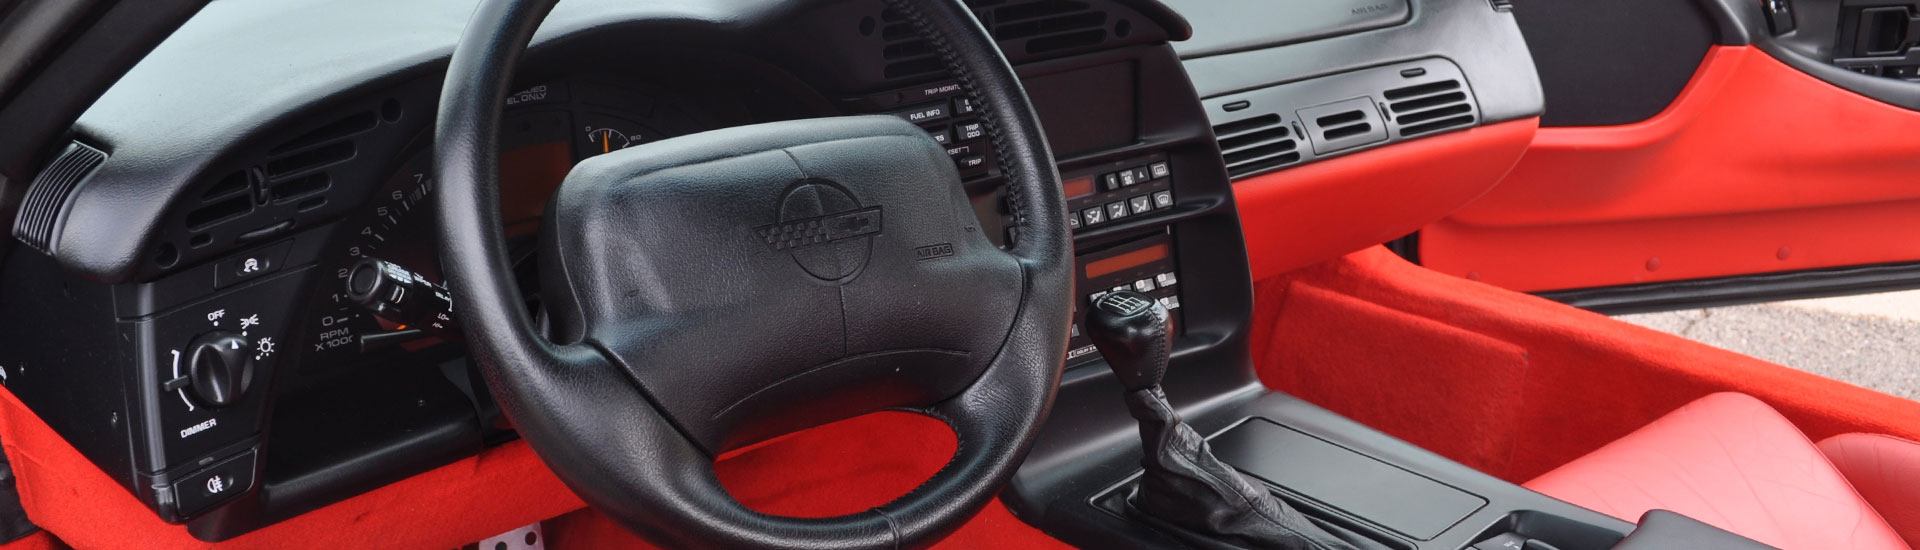 1996 Chevrolet Corvette Dash Kits